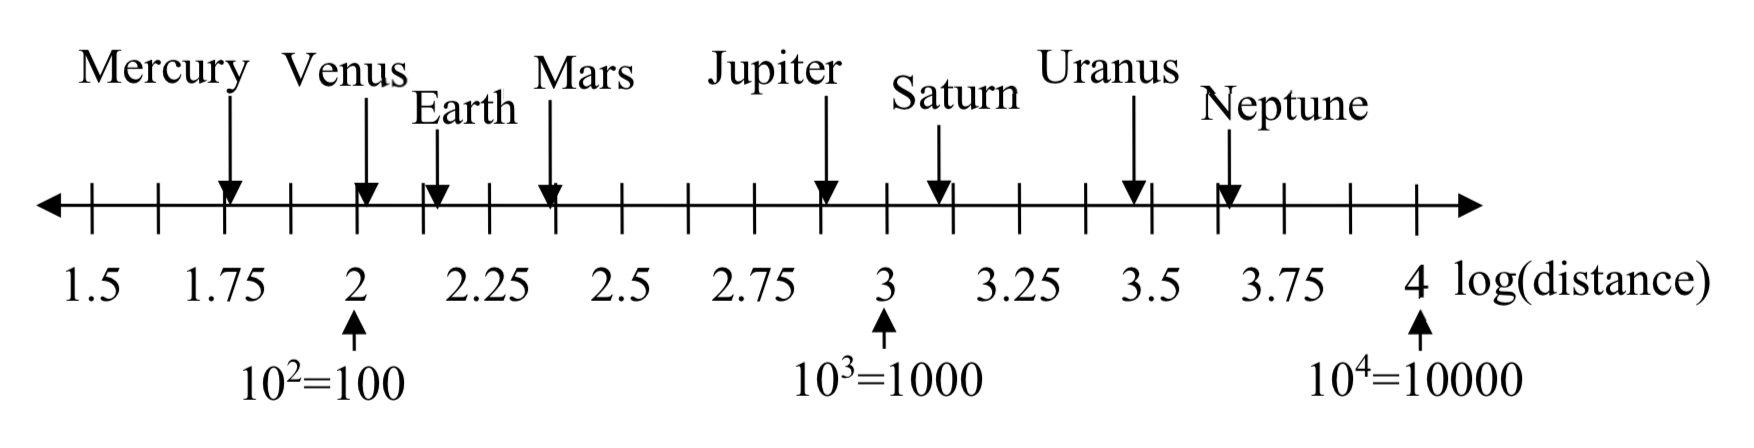 Una línea numérica etiquetada log de distancia, de 1.5 a 4. A las 2 hay una flecha señalando 10 al cuadrado equivale a 100. A las 3 hay una flecha señalando 10 cubos equivale a 1000. Hay una flecha de Mercurio en 1.76, para Venus en 2.03, para la Tierra en 2.18, y una flecha adicional para los otros planetas en el log de valores de distancia de la tabla anterior.